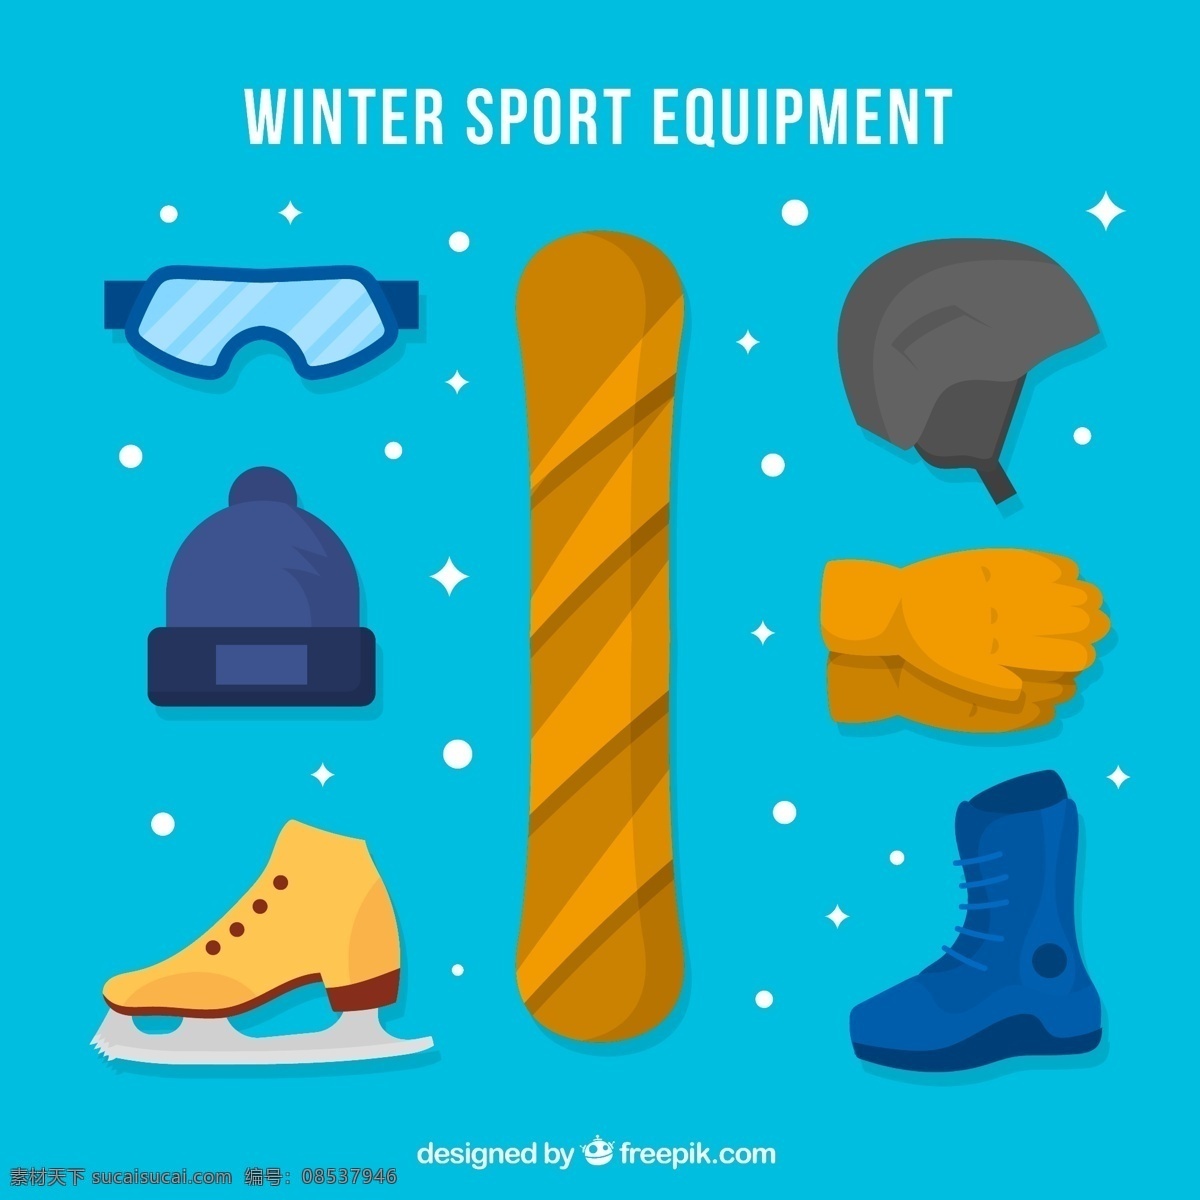 创意 冬季 运动 装备 滑雪镜 滑雪板 头盔 溜冰鞋 滑雪帽 生活百科 体育用品